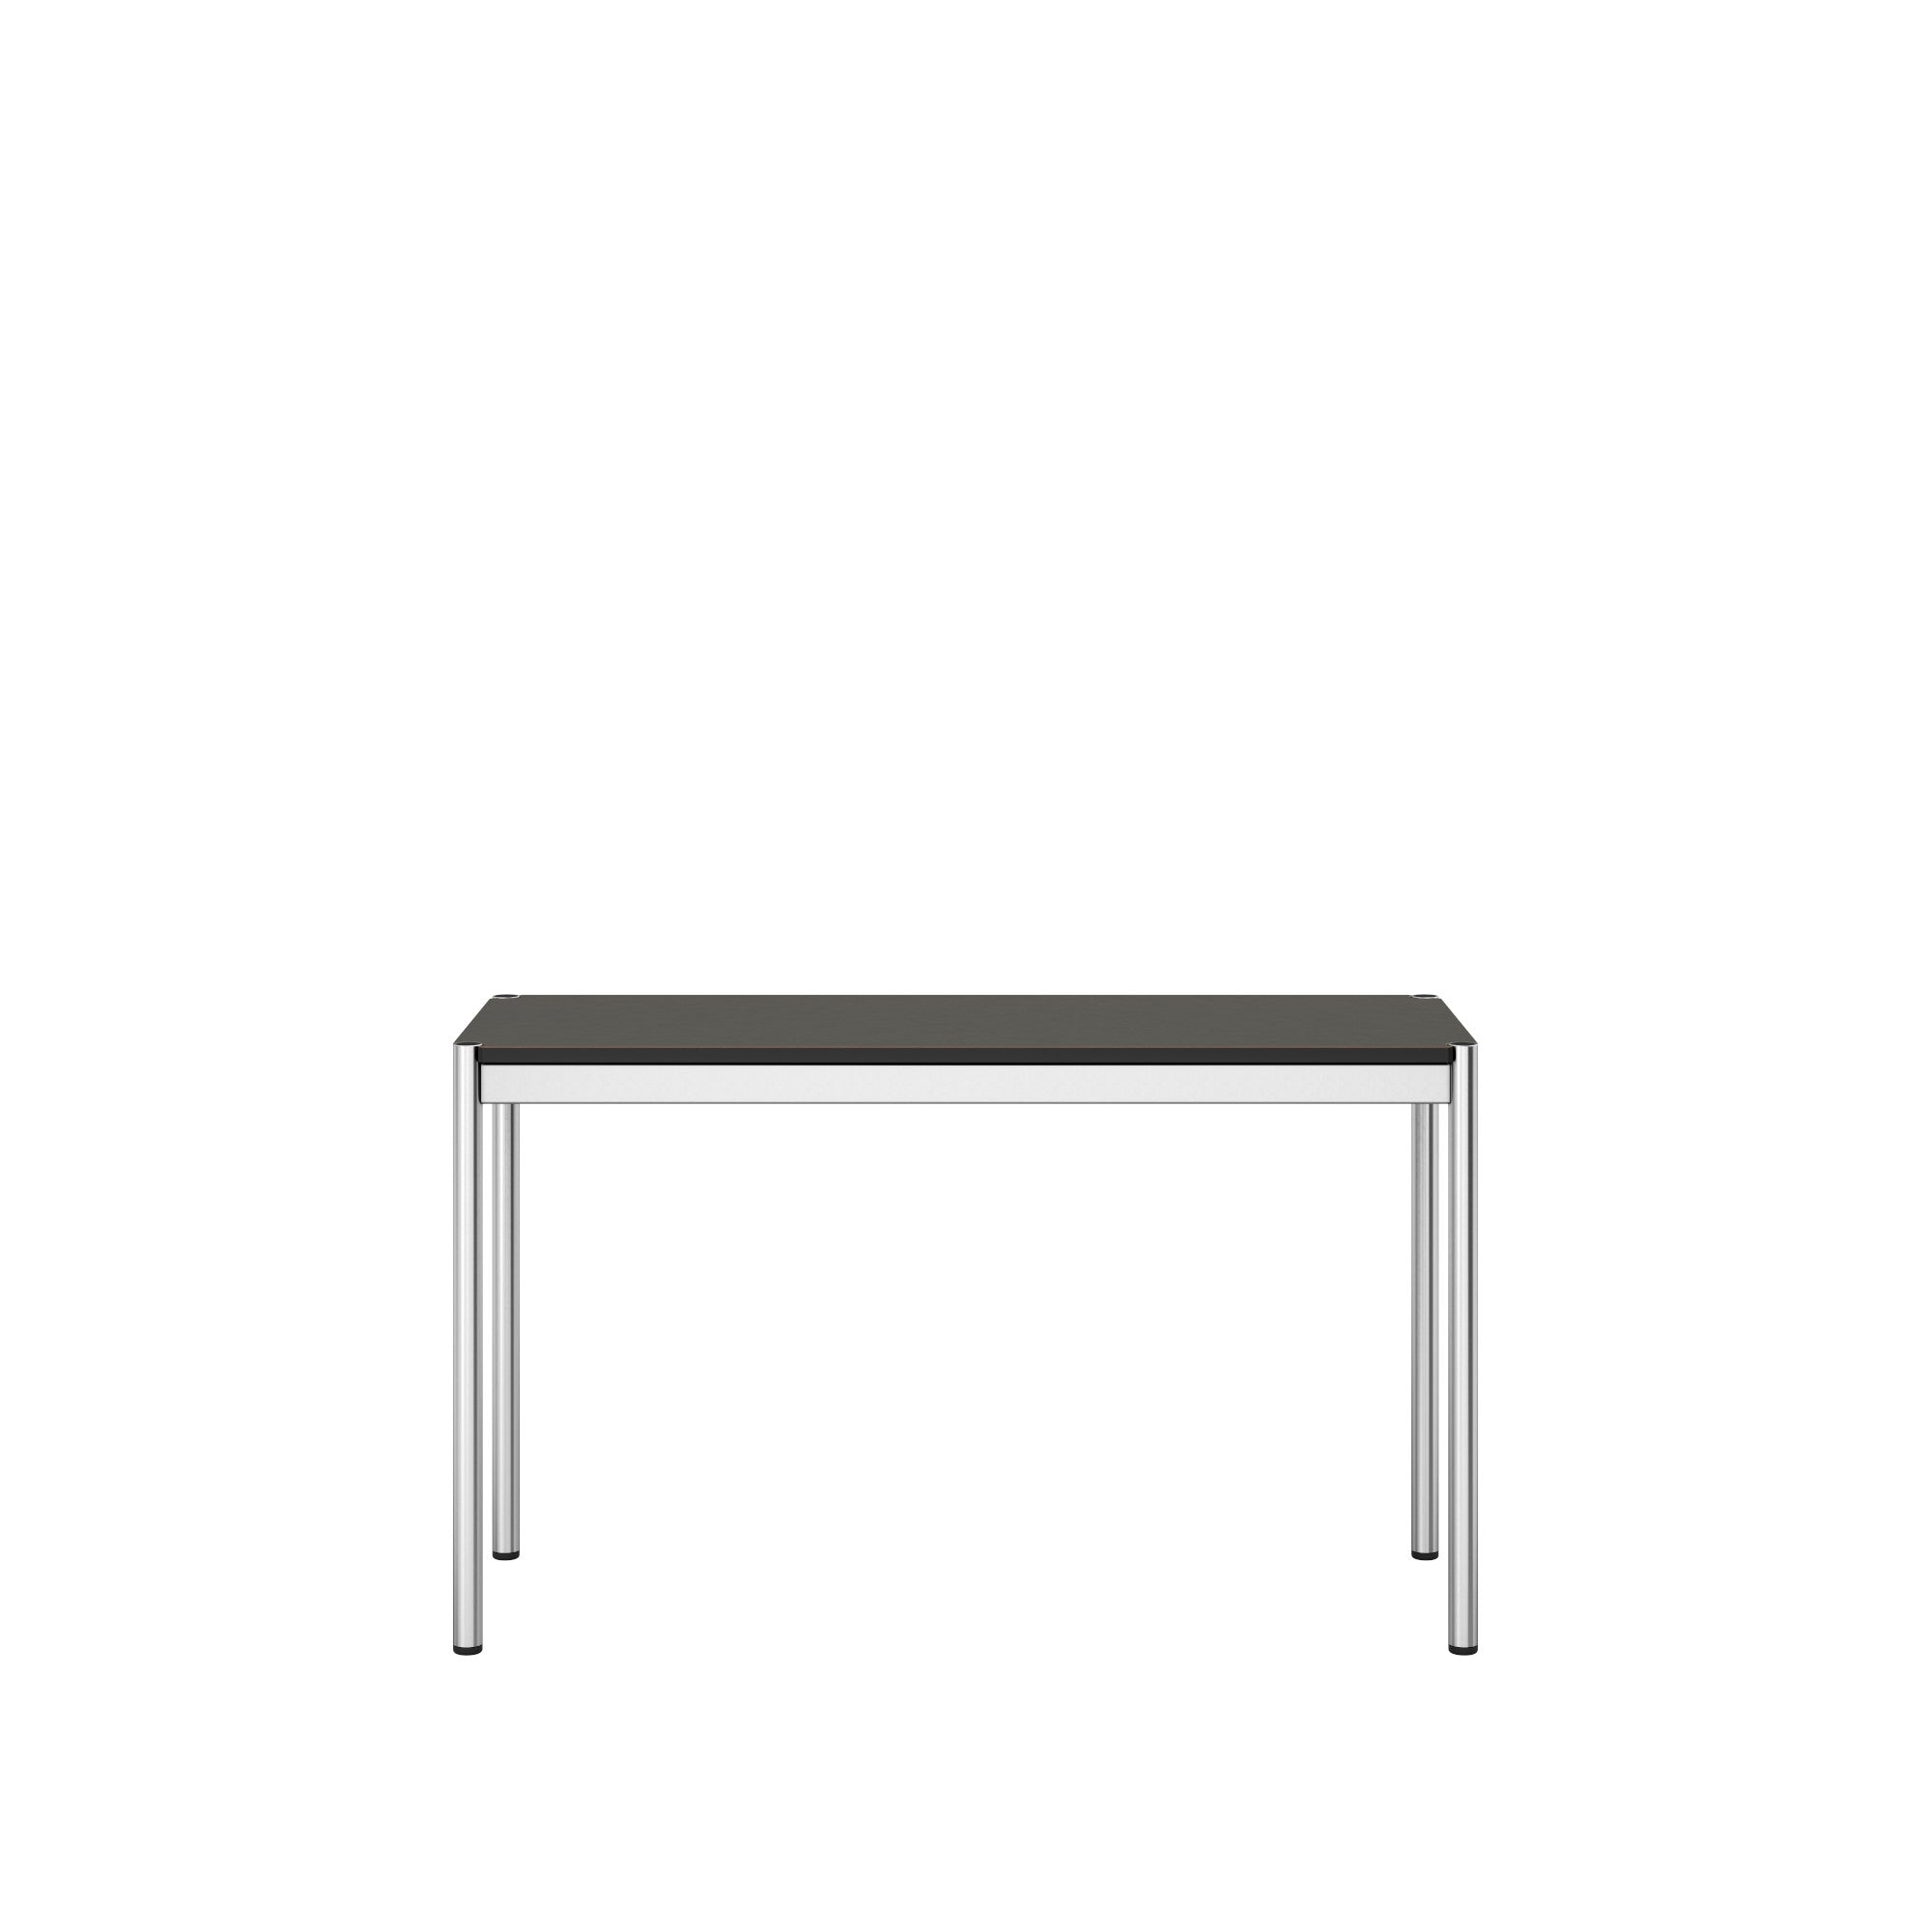 USM Haller narrow table 1250mm (T8)